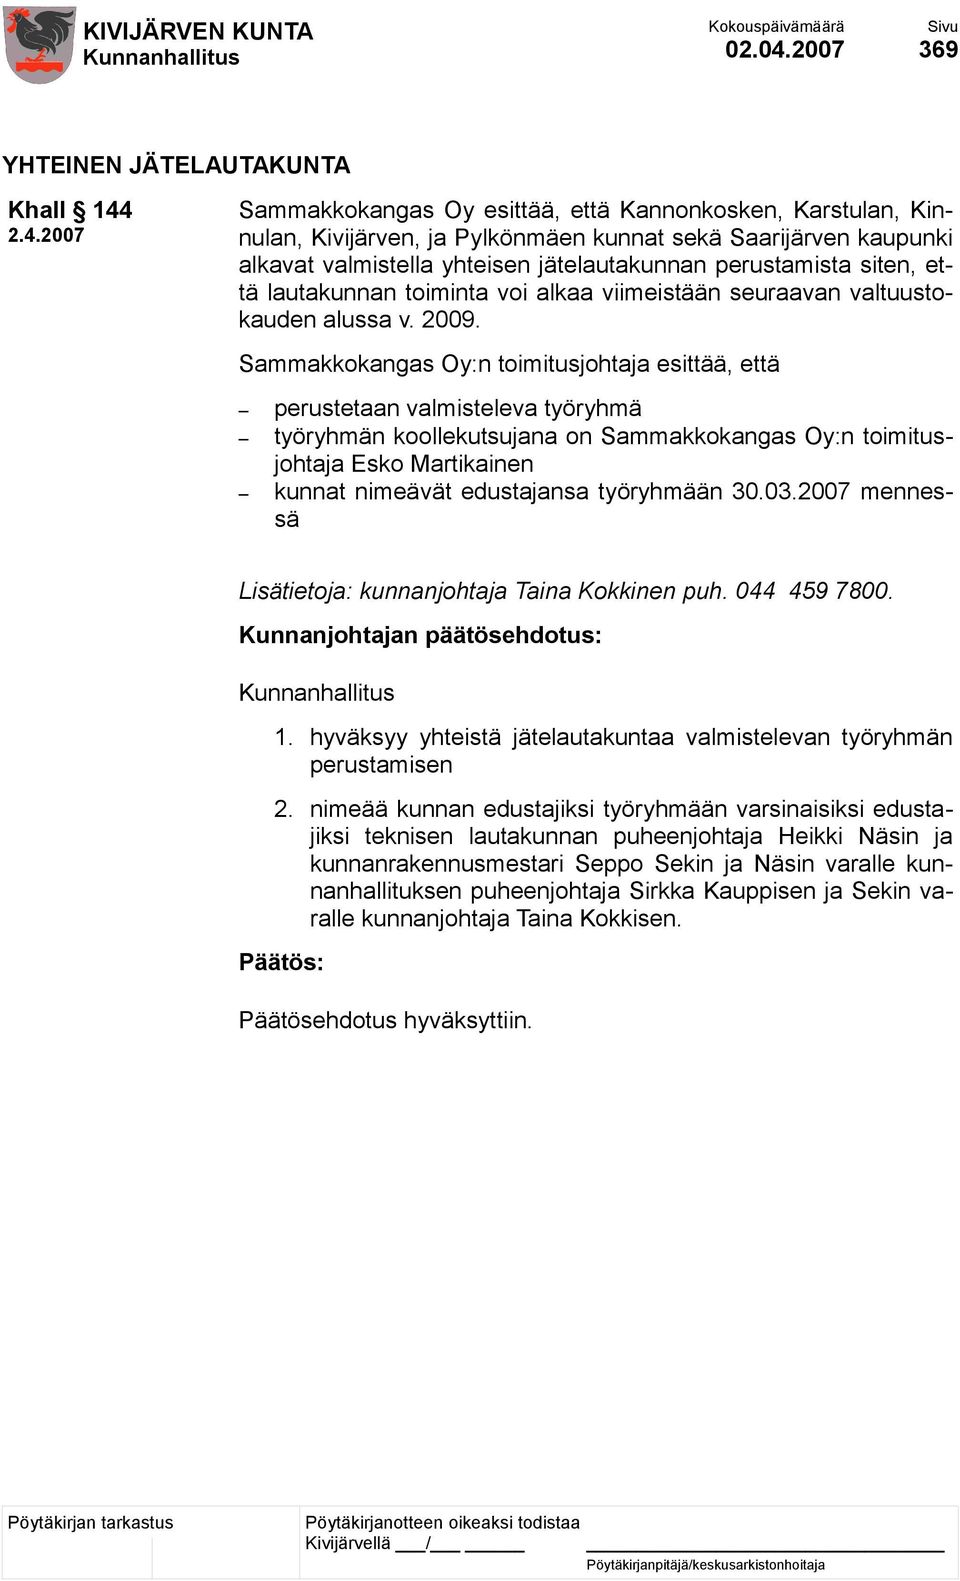 2.4.2007 Sammakkokangas Oy esittää, että Kannonkosken, Karstulan, Kinnulan, Kivijärven, ja Pylkönmäen kunnat sekä Saarijärven kaupunki alkavat valmistella yhteisen jätelautakunnan perustamista siten,